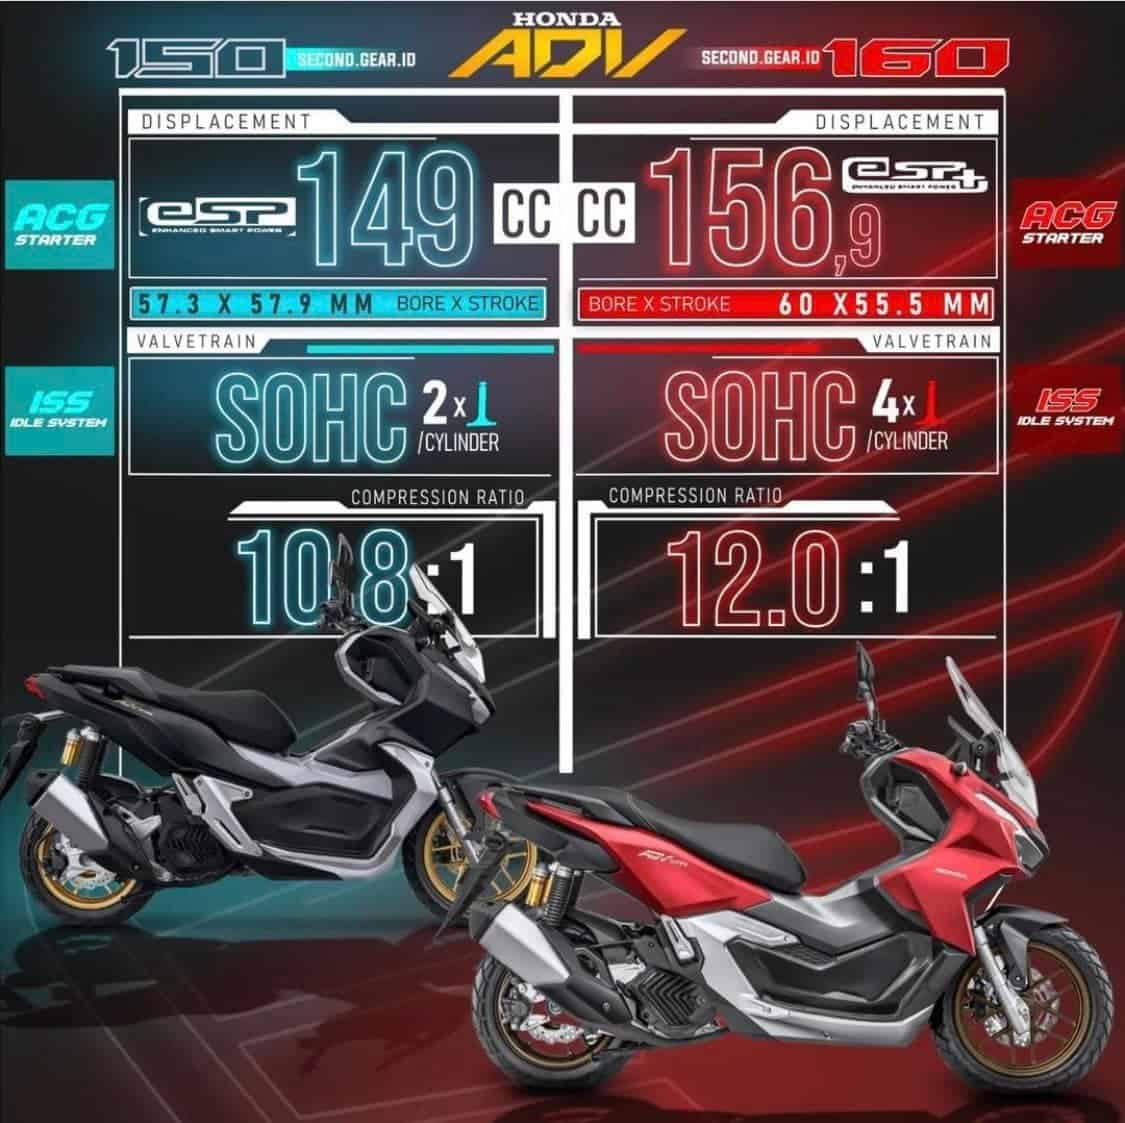 So sánh động cơ ADV 160 và ADV 150